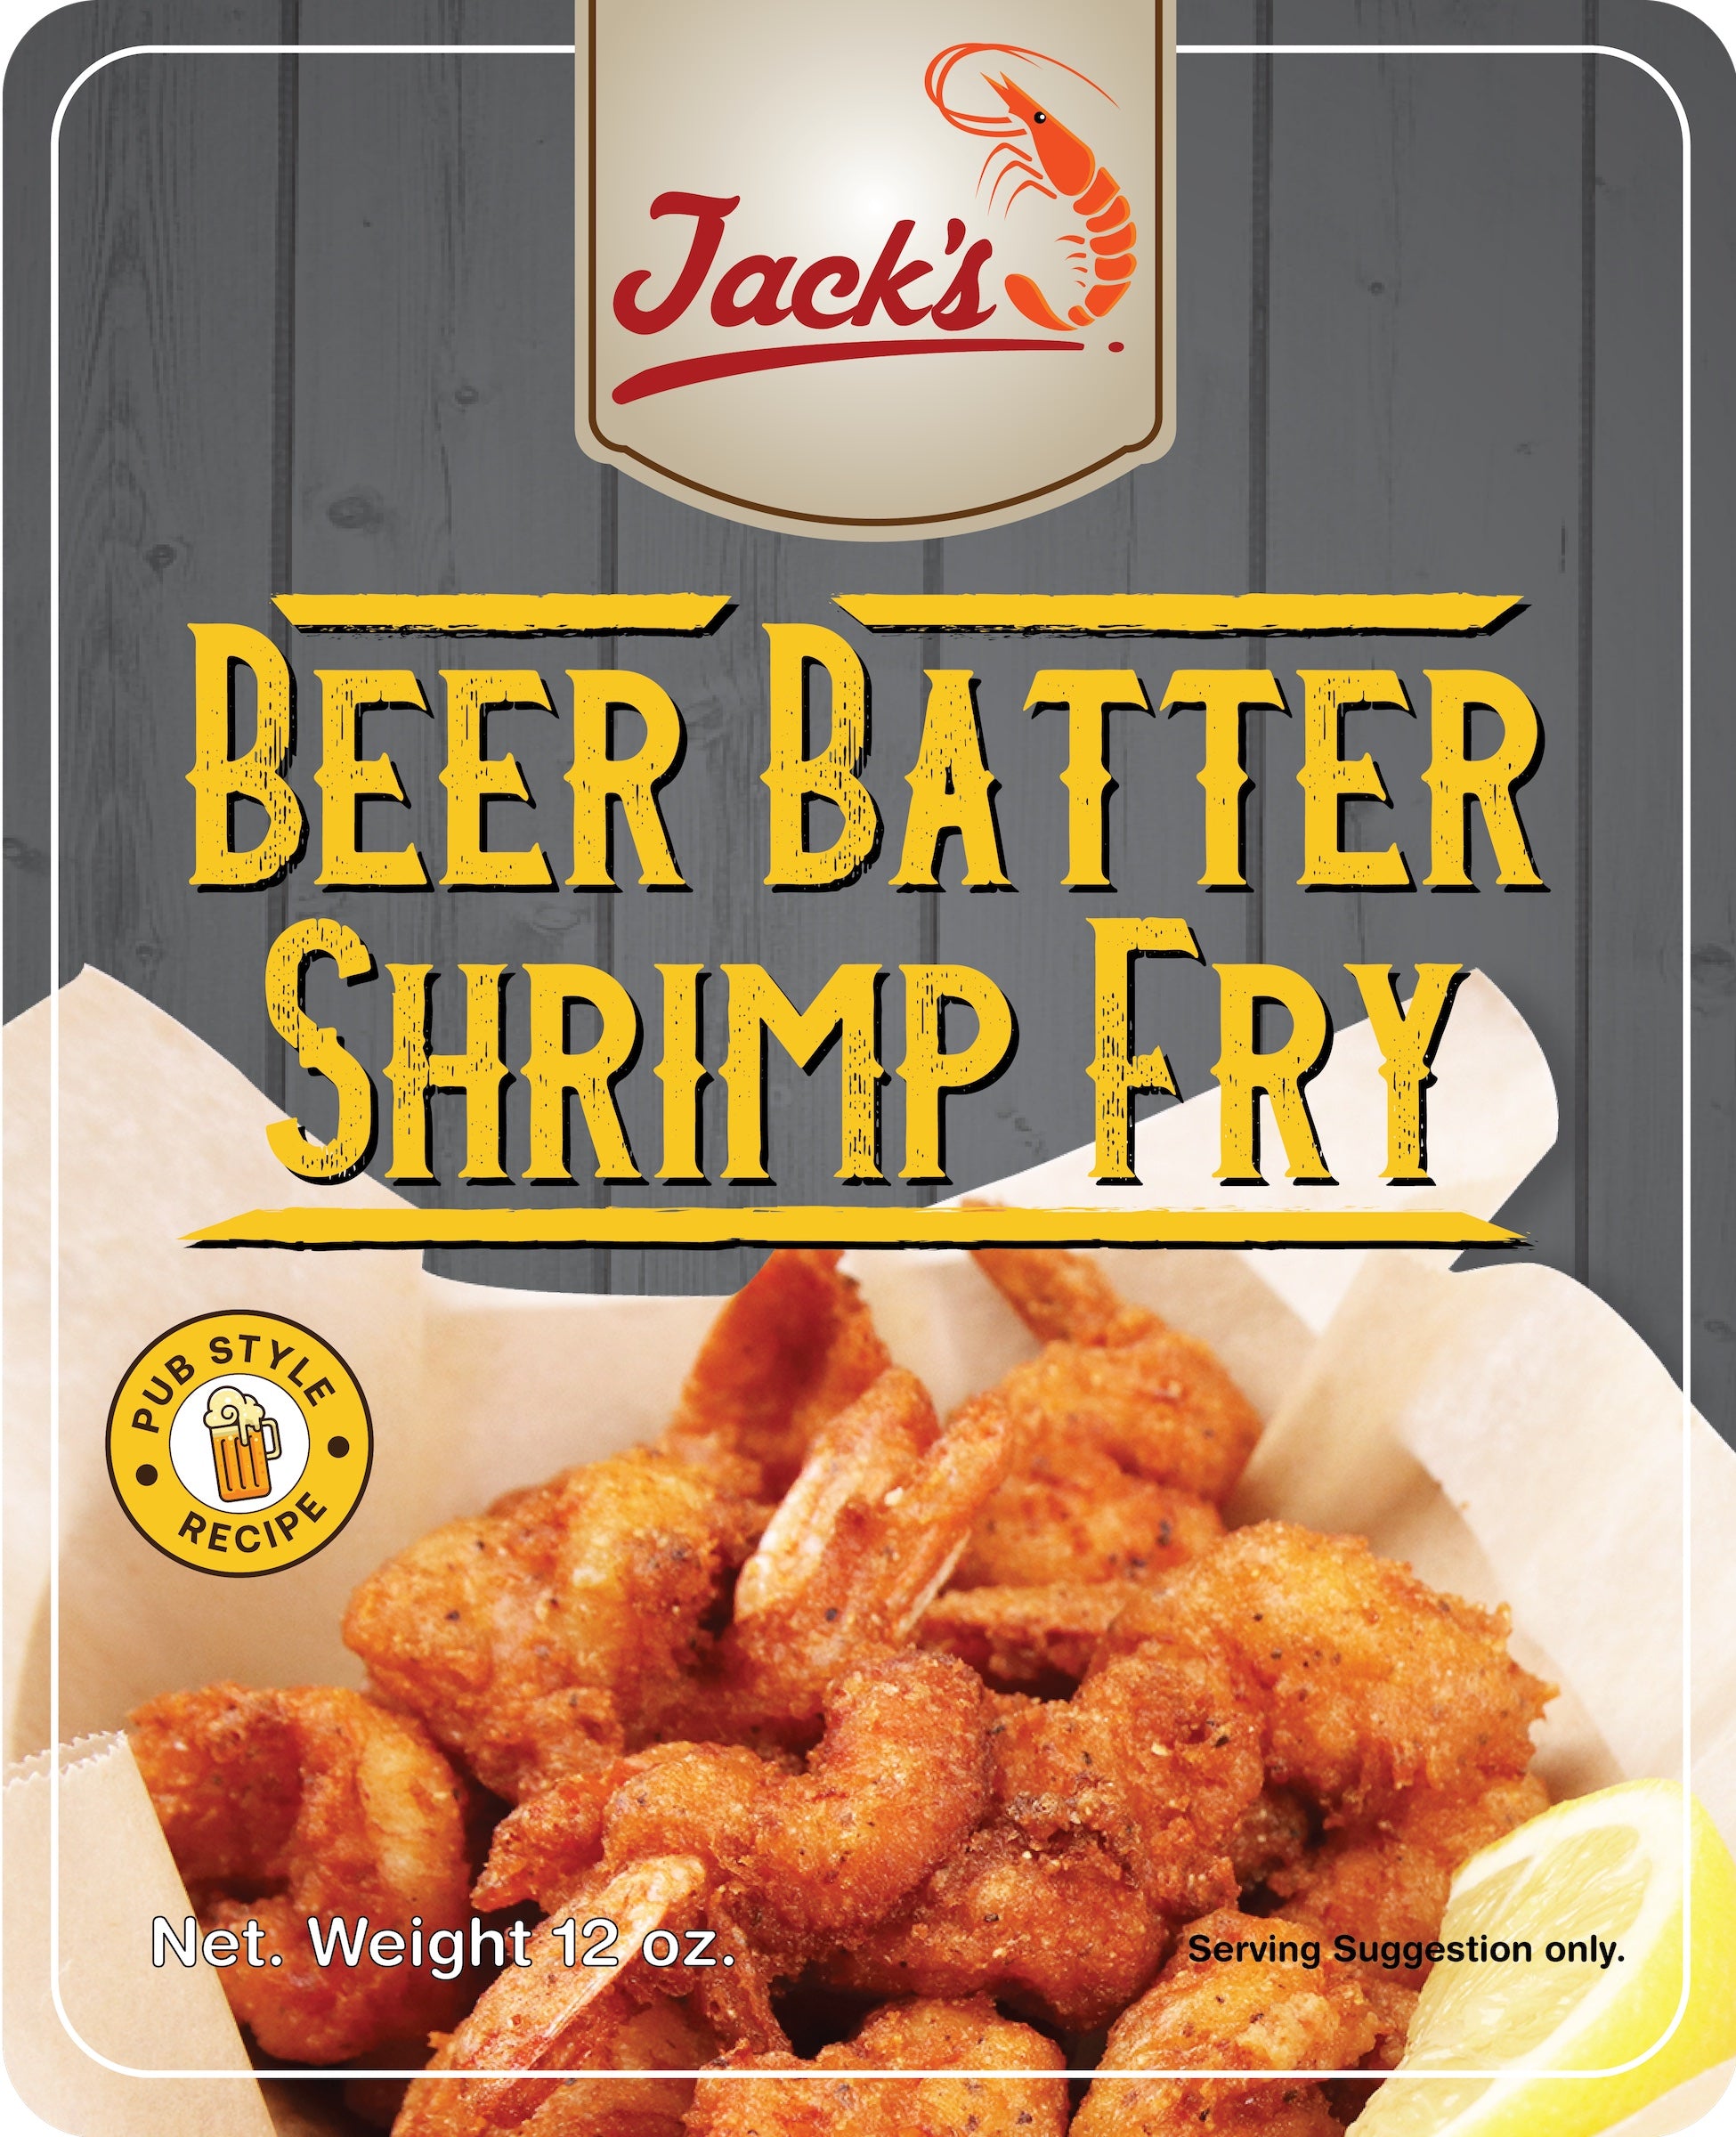 Jack's Beer Batter Shrimp Fry